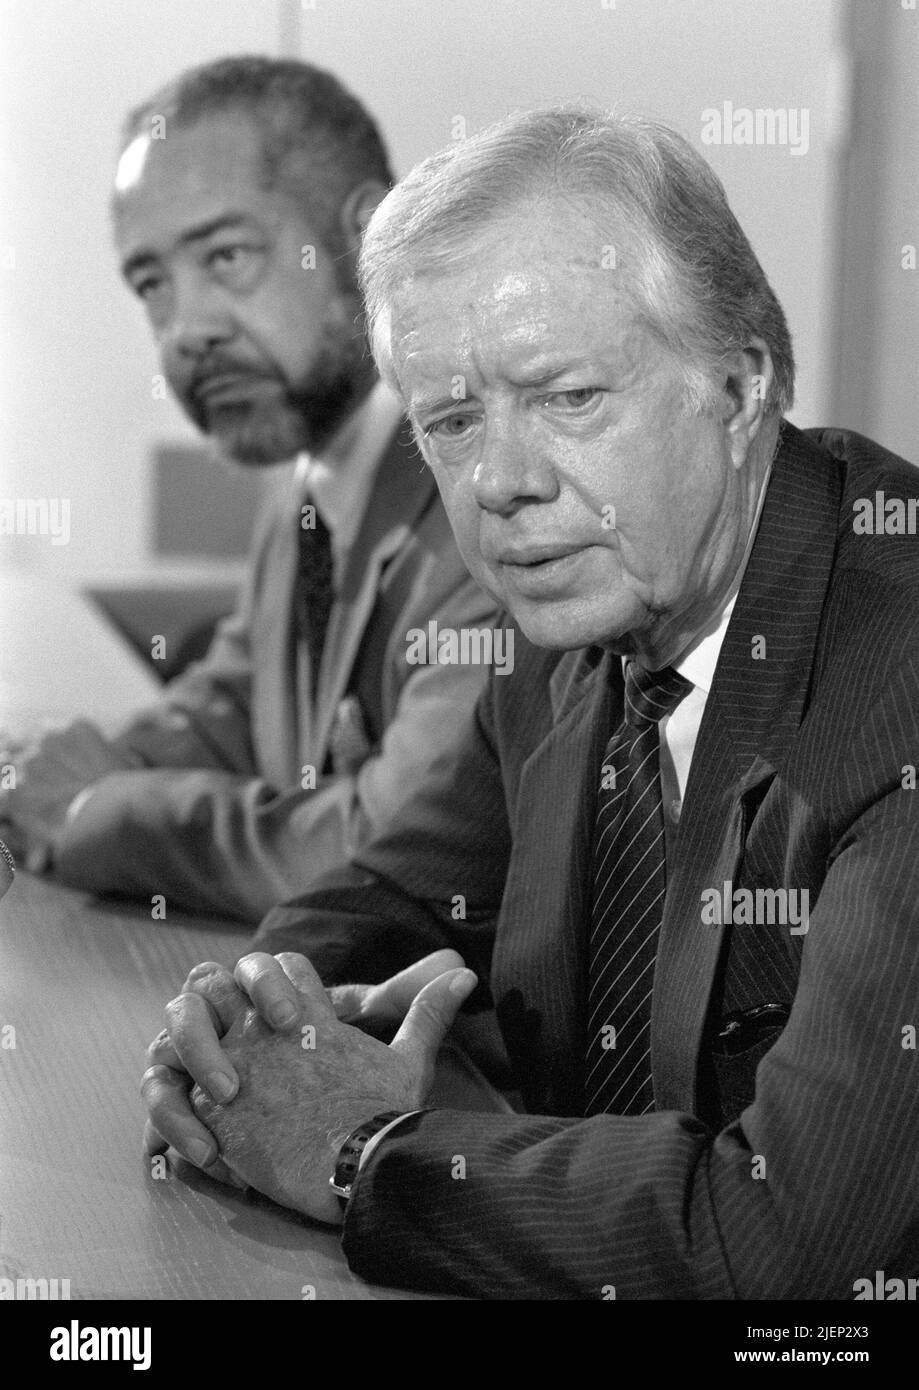 L'ex Presidente degli Stati Uniti Jimmy carter ha fatto una conferenza stampa nei Paesi Bassi all'aeroporto Schiphol di Amsterdam il 6 ottobre 1988. Foto Stock